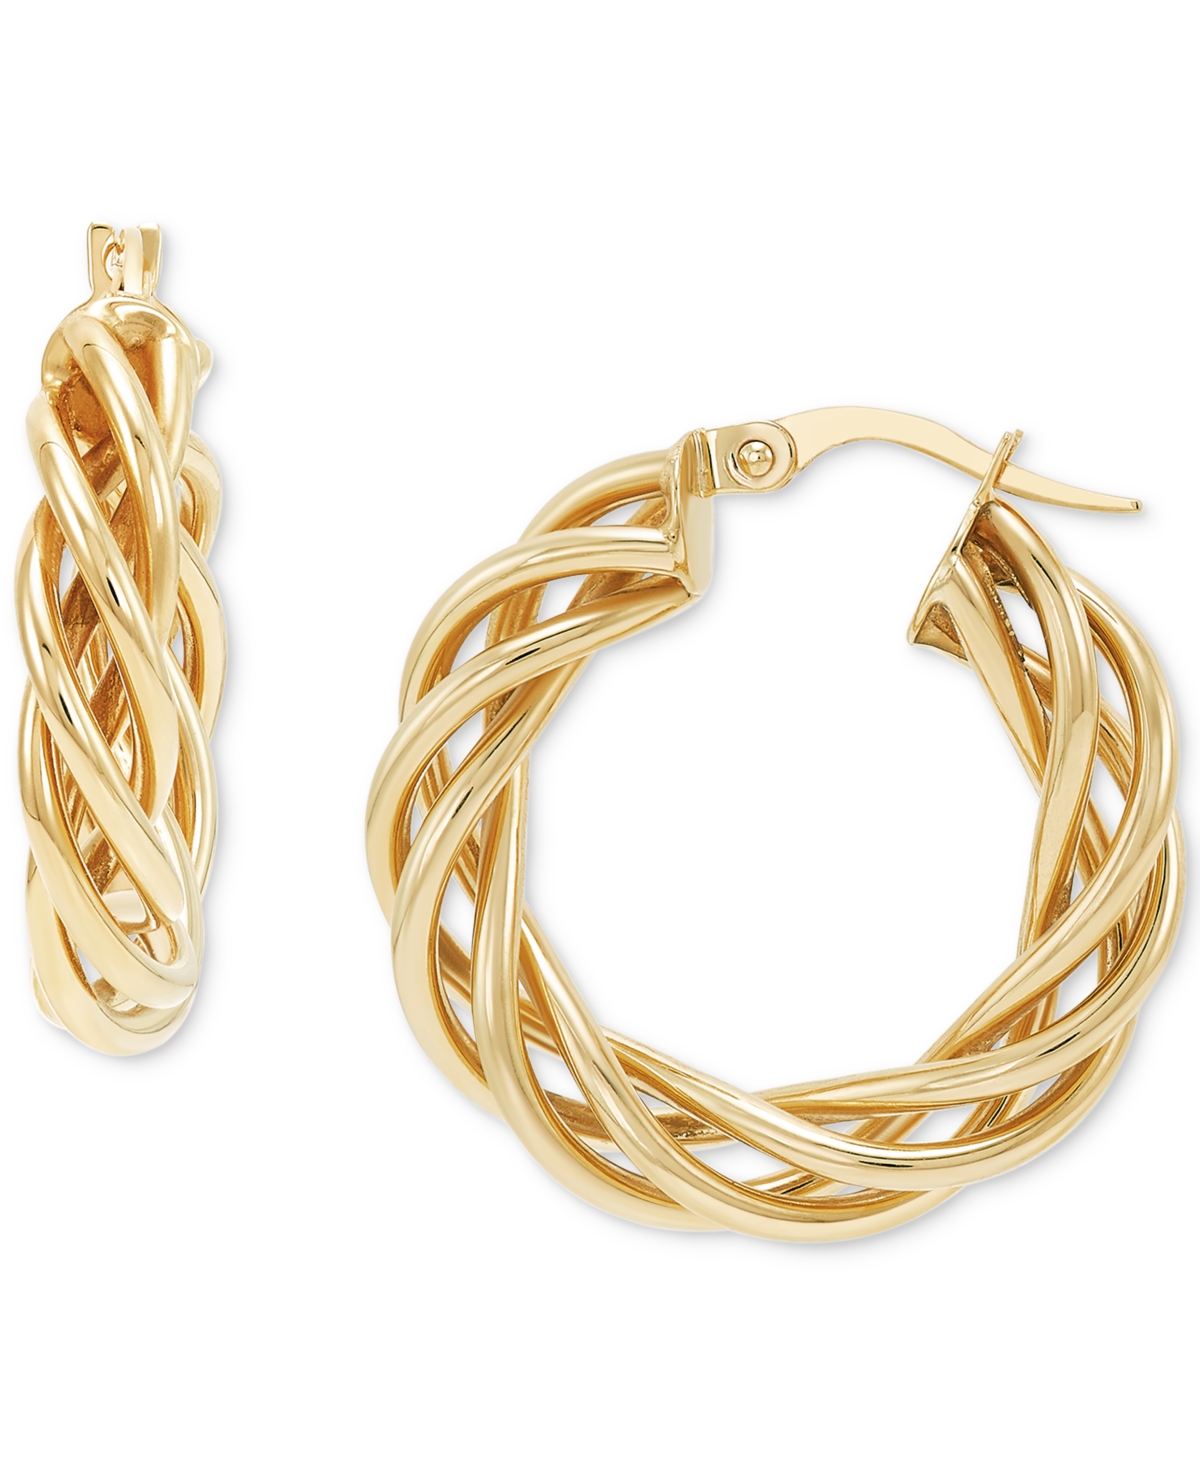 Italian Gold Braided Small Hoop Earrings In 10k Gold, 1"